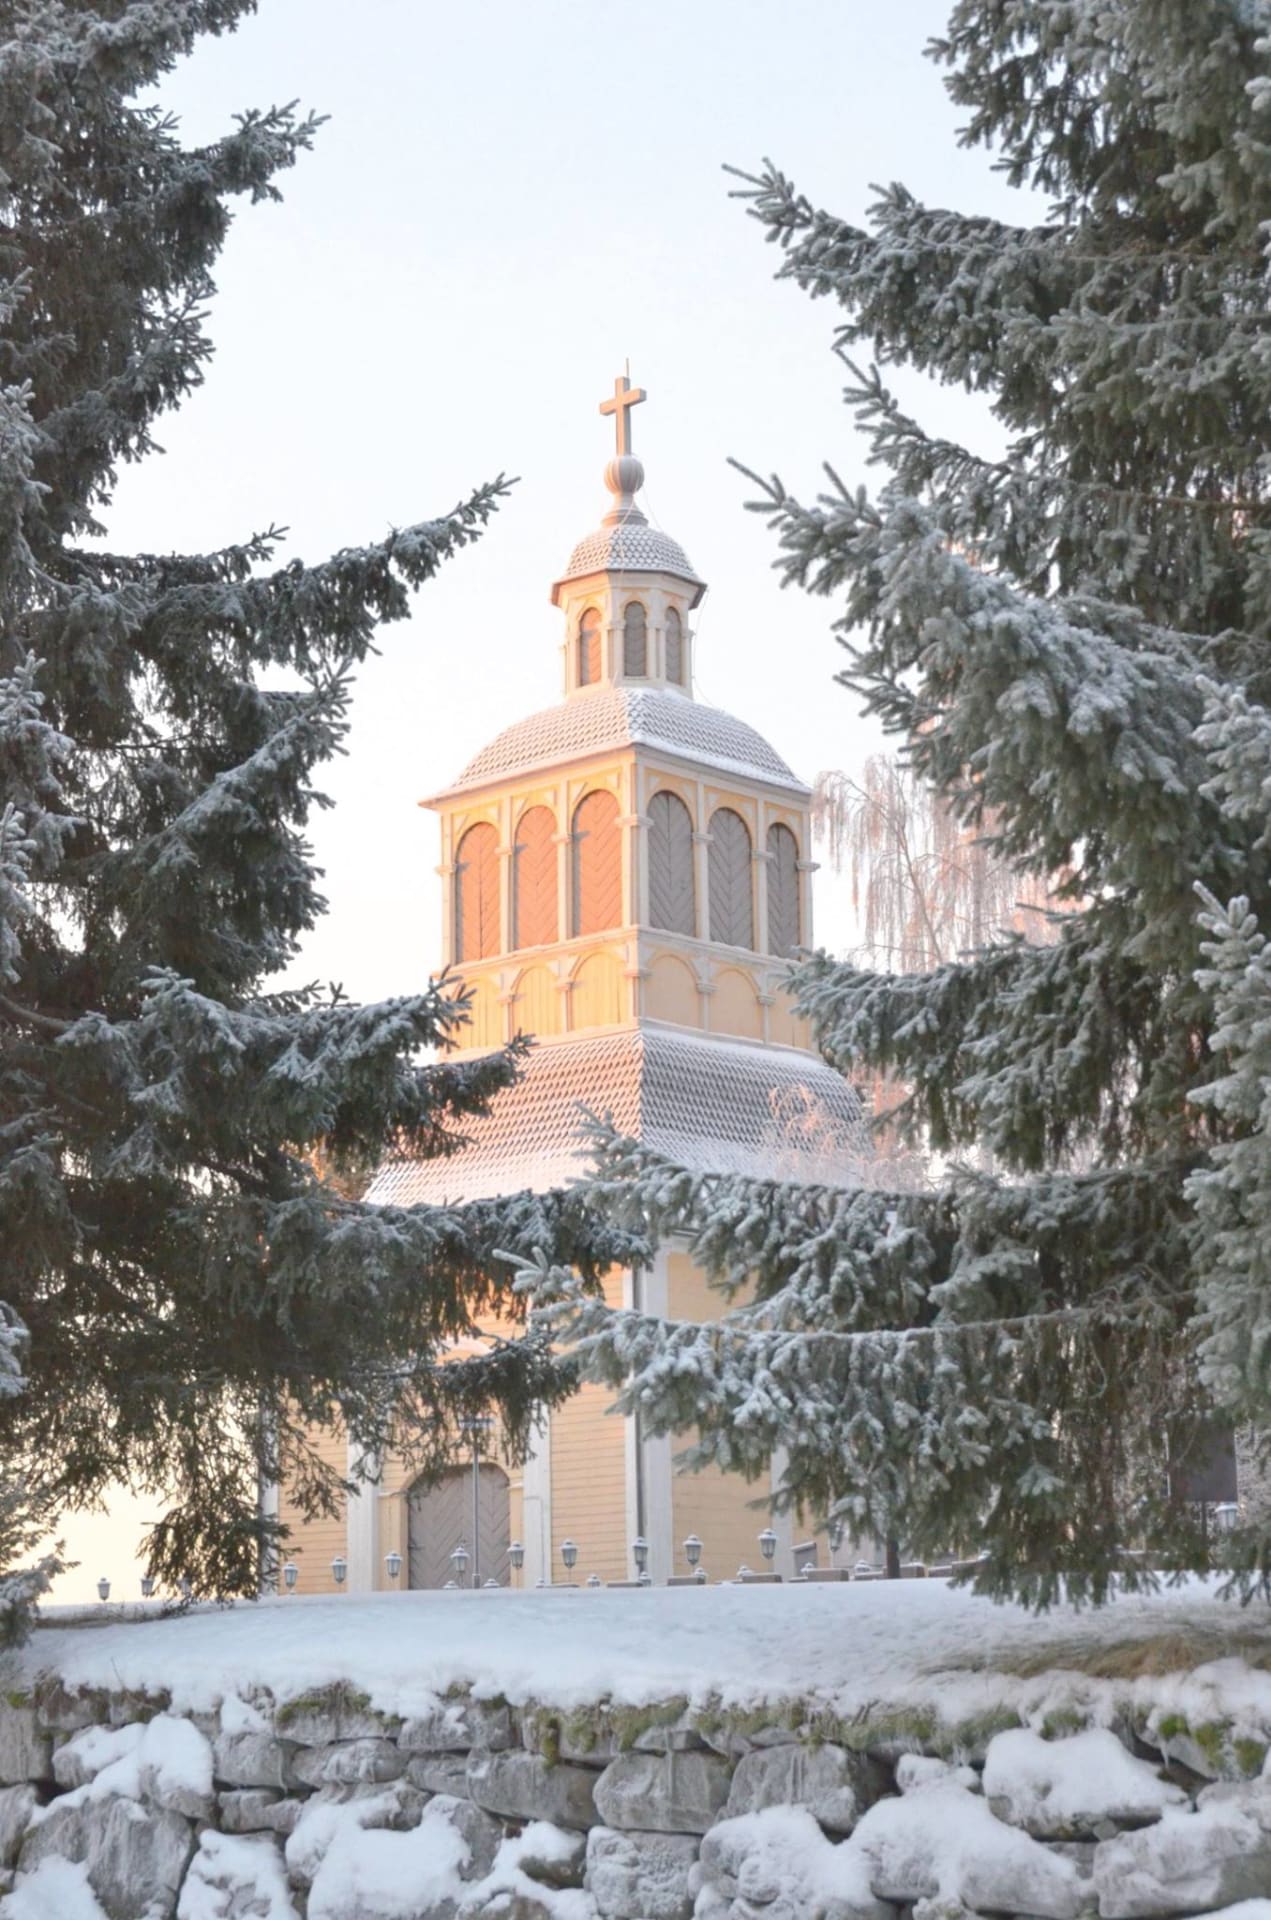 Liminka church in wintery landscape.